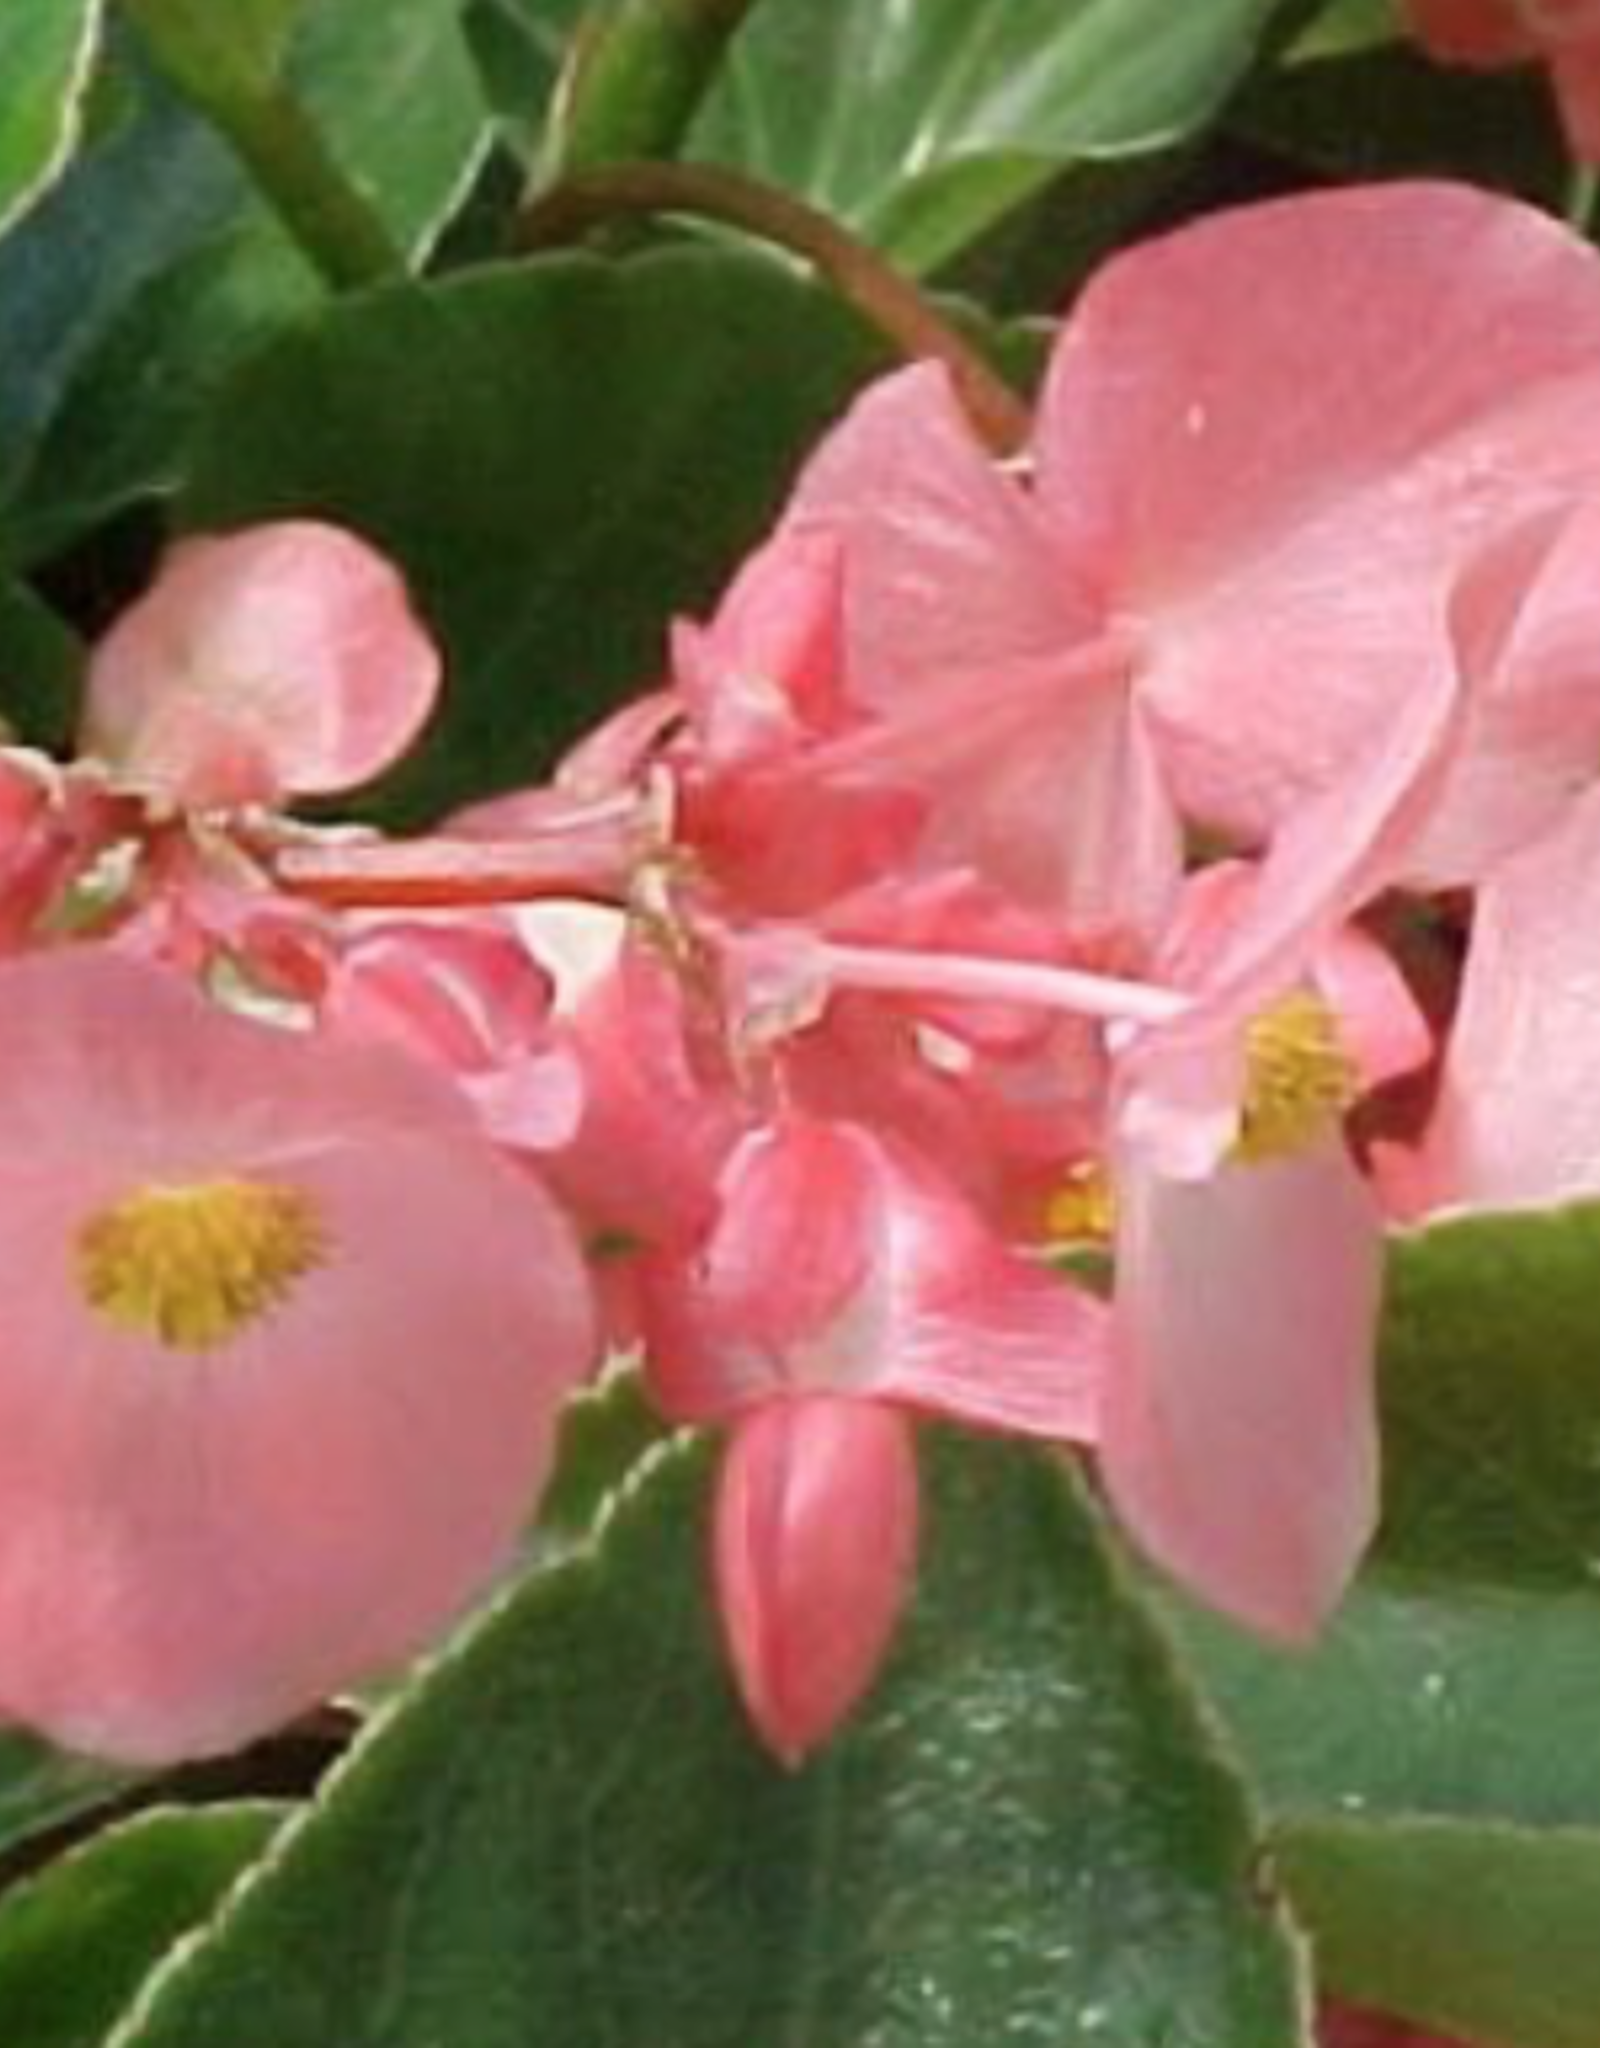 Seasonal Annuals: 5" Pot: Begonia Pink Dragonwing